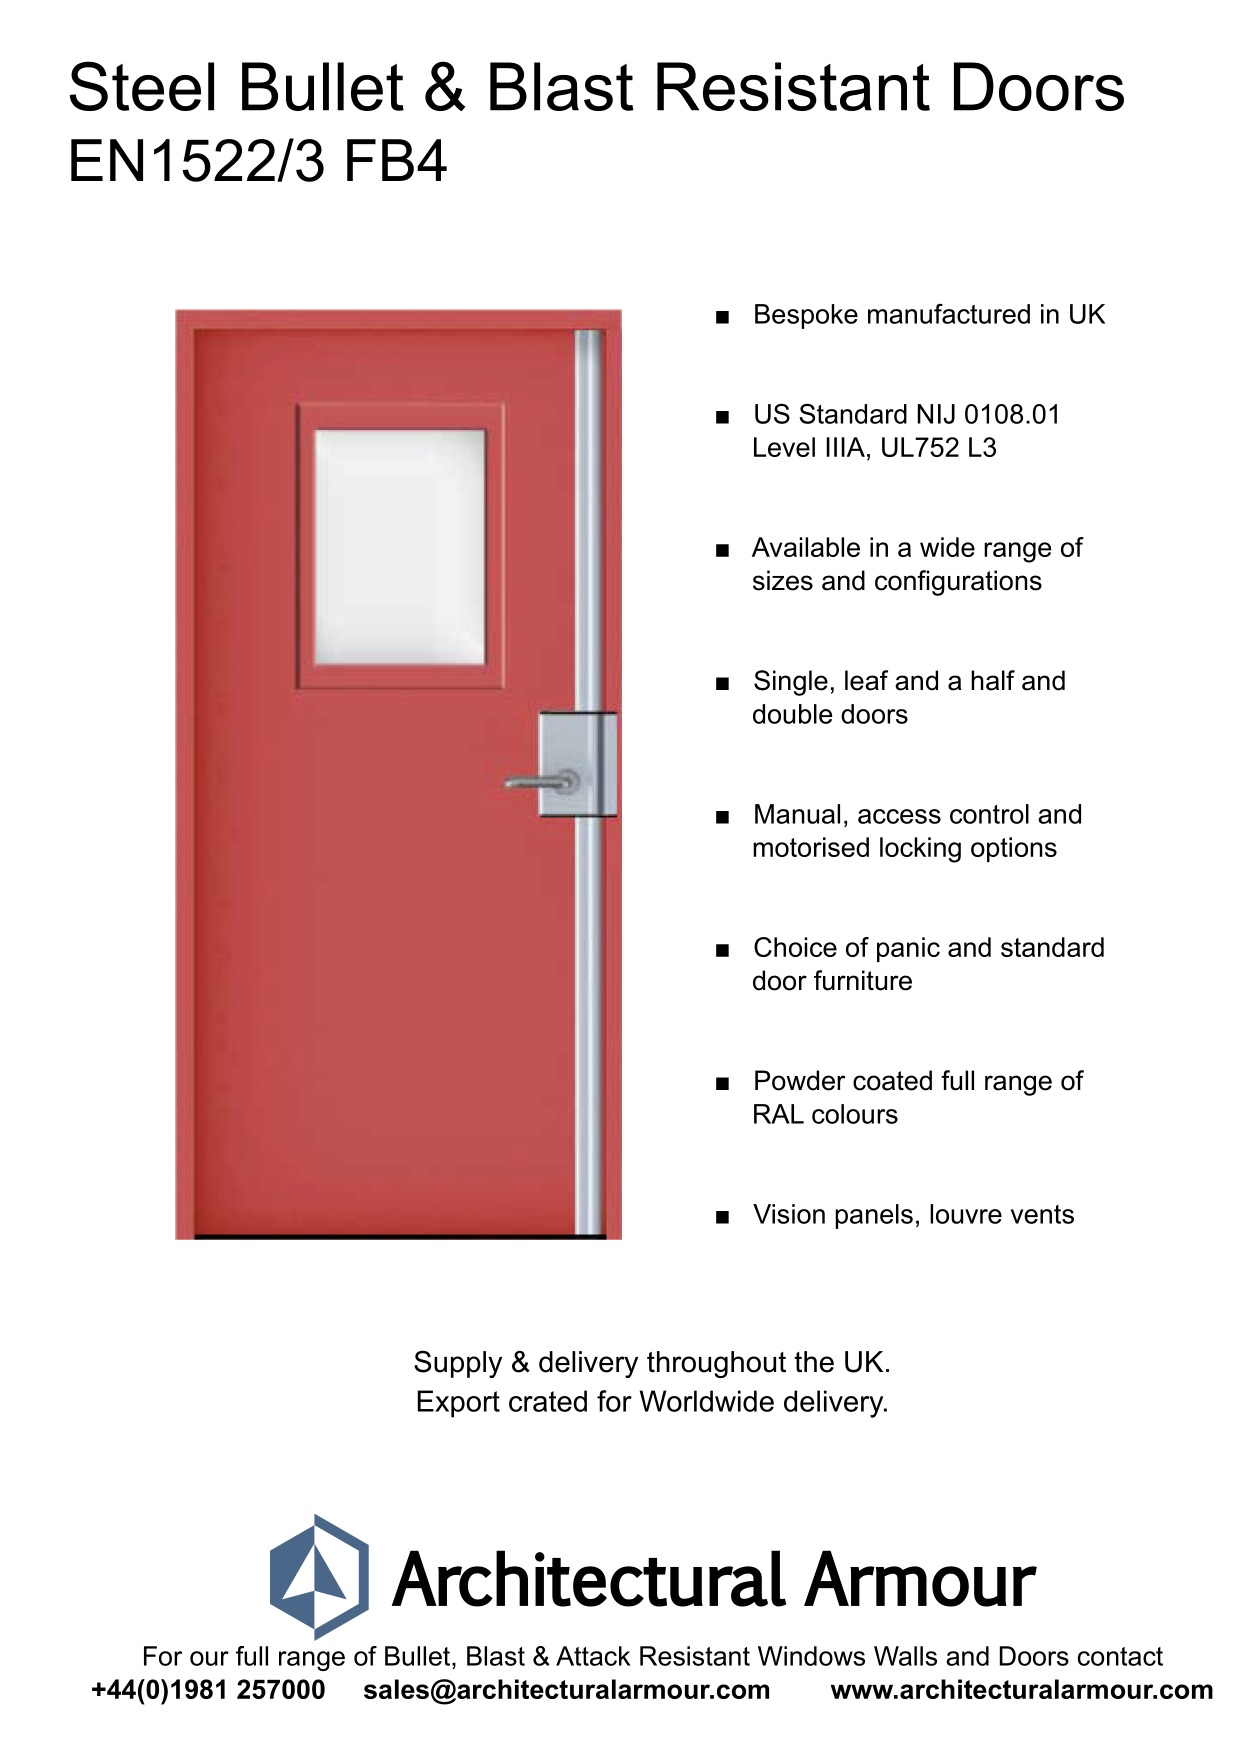 Bomb-Blast-and-Bullet-Resistant-Steel-Doors-EN1522-3-FB4